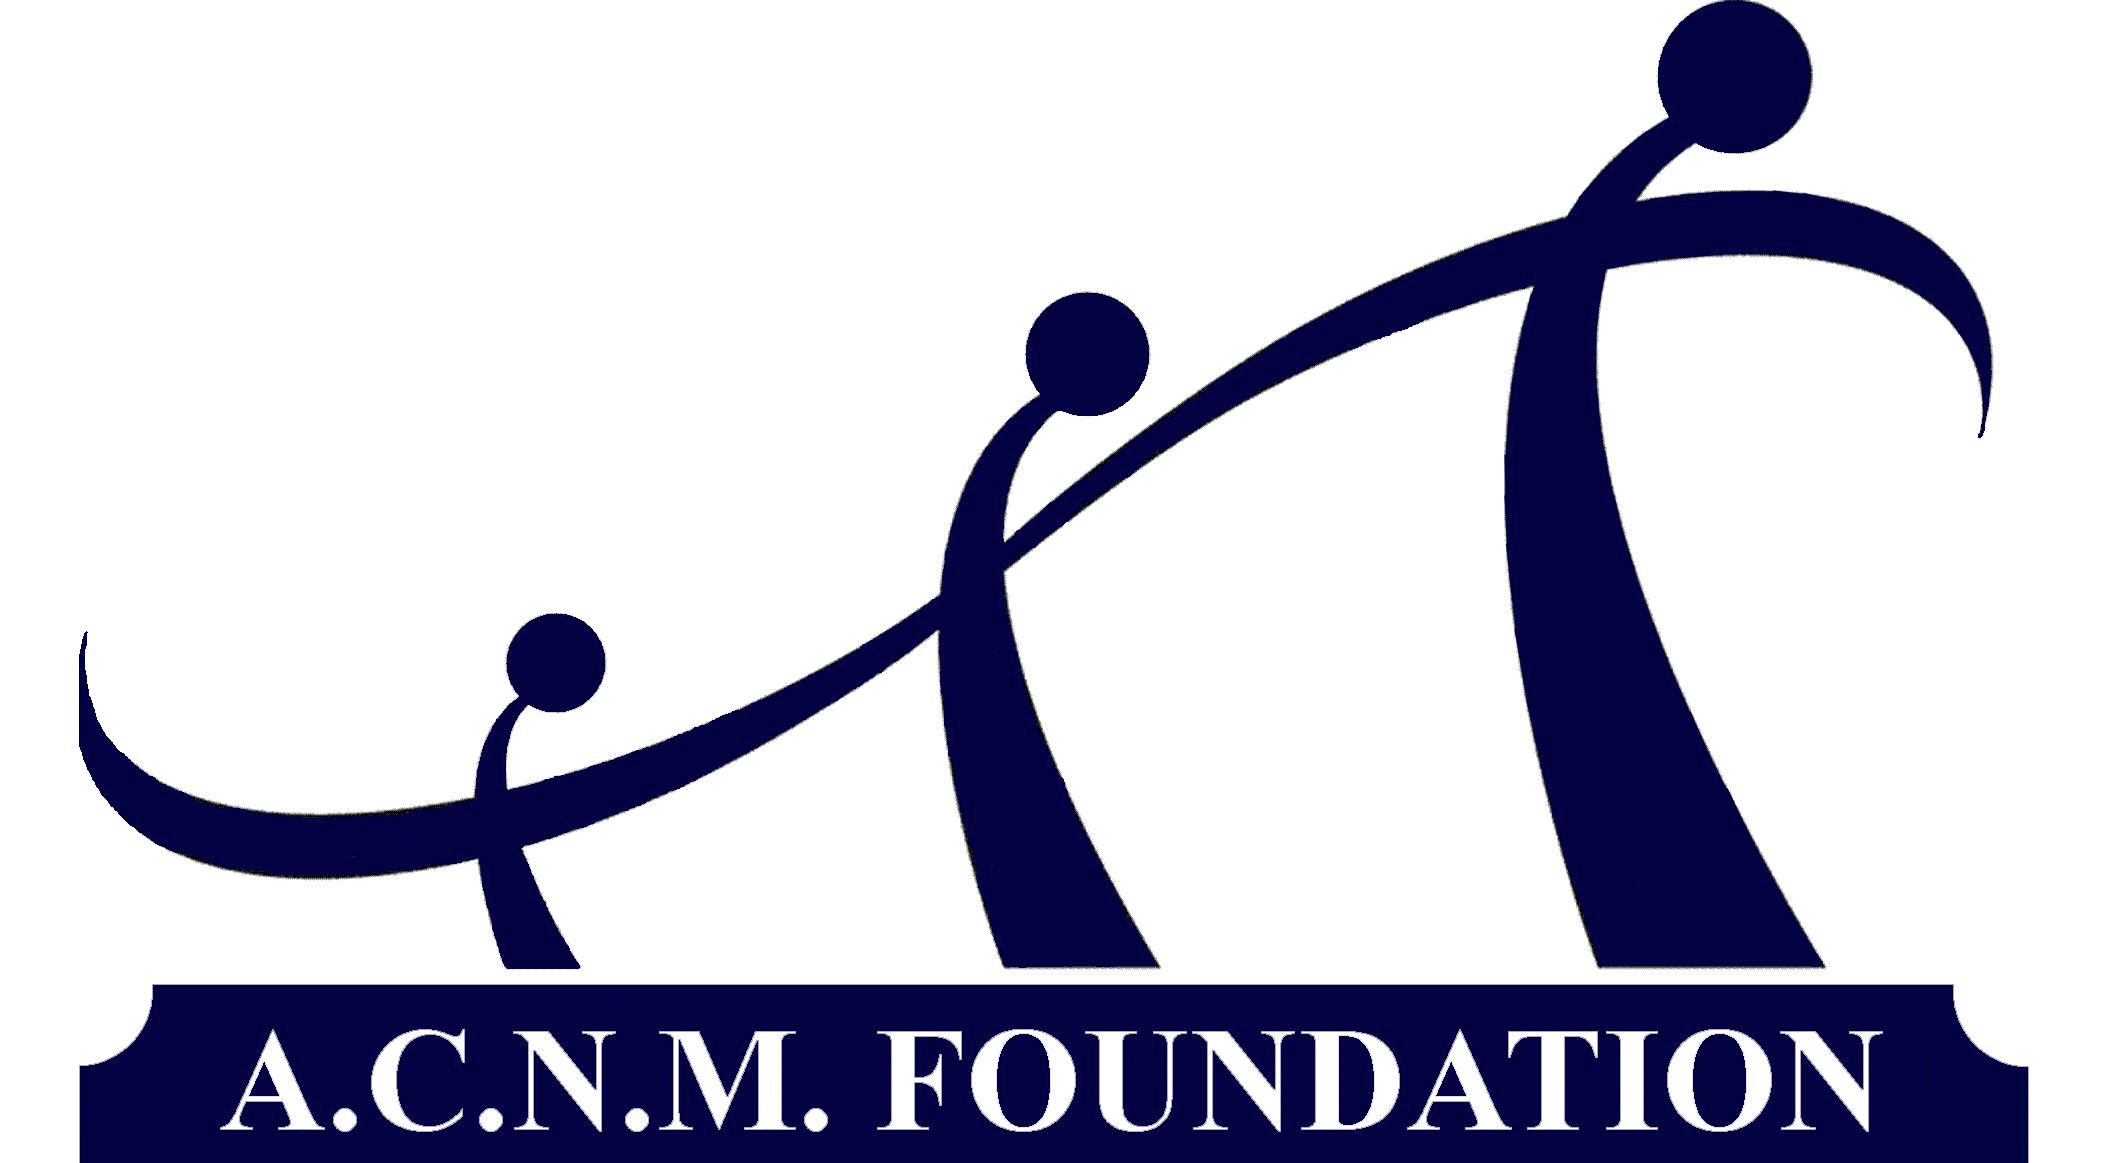 A.C.N.M Foundation